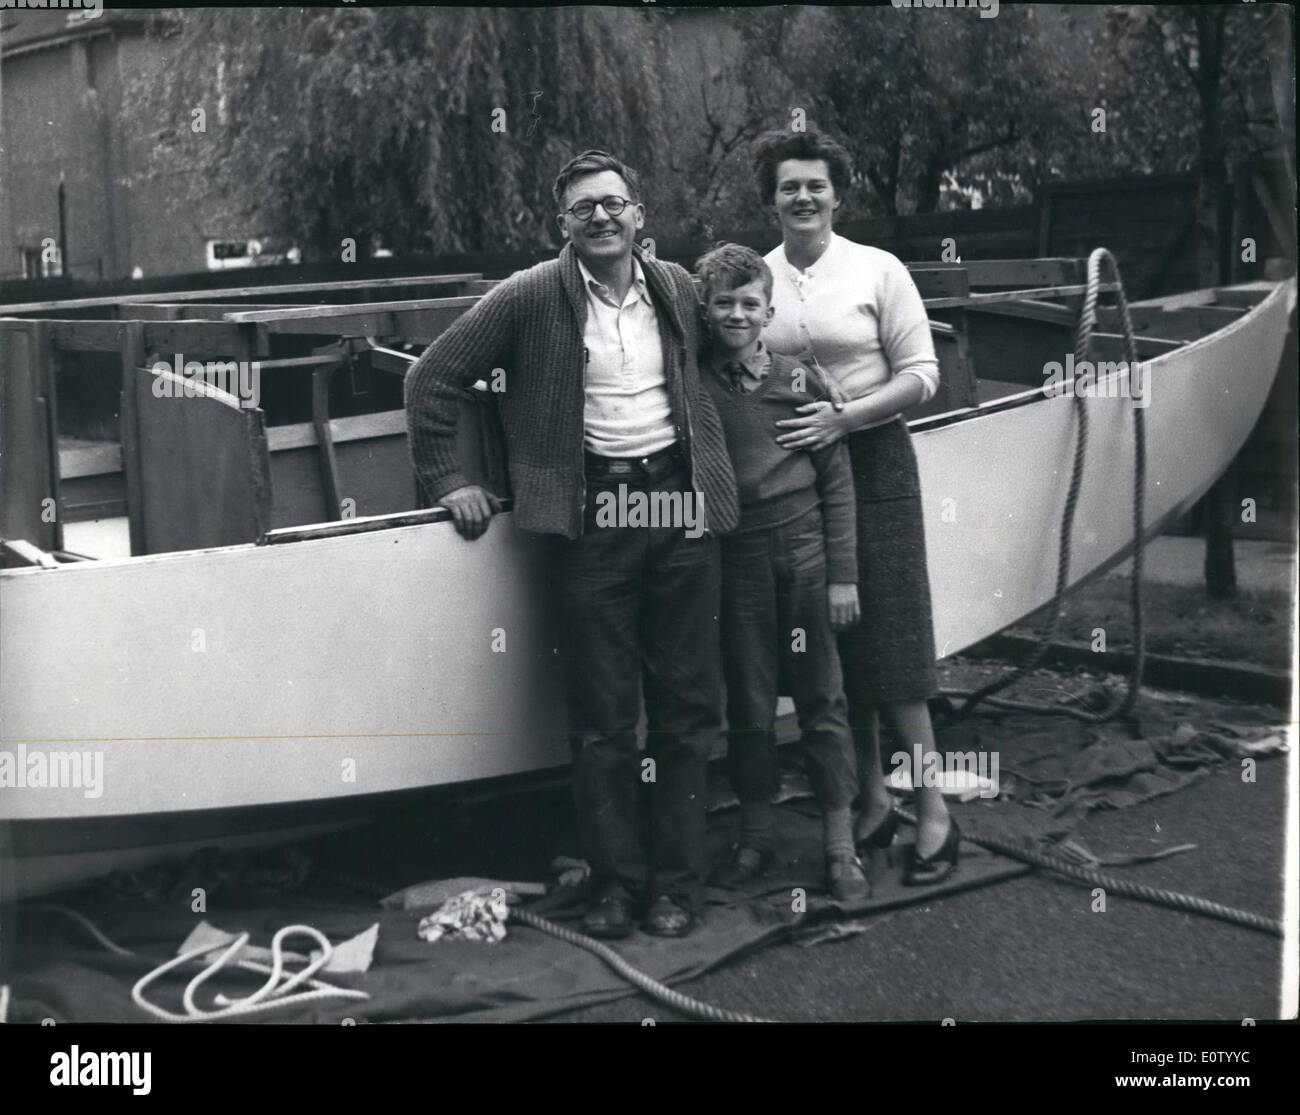 10. Oktober 1960 - baute er sein eigenes Boot - In seinem Vorgarten. Eine kleine Armee -, drehen Sie es über rekrutiert: Sechs Jahren - begann Herr Sant - Wer ist ein scharf Segler - und lebt in Carshalton Beeches, Surrey - Bau einer Yacht in seiner Stube. Wenn das Boot begann zu wachsen - er hatte auf Frontantrieb - zu absolvieren, die er in abgedeckt, so dass er bequem auf die Hauptbaugruppe seine 25 ft lange funktionieren könnte manipuliert Bermuda Sloop - ausgestattet mit einer kleinen Hilfsmotor - sein wird nach Abschluss Stockfoto